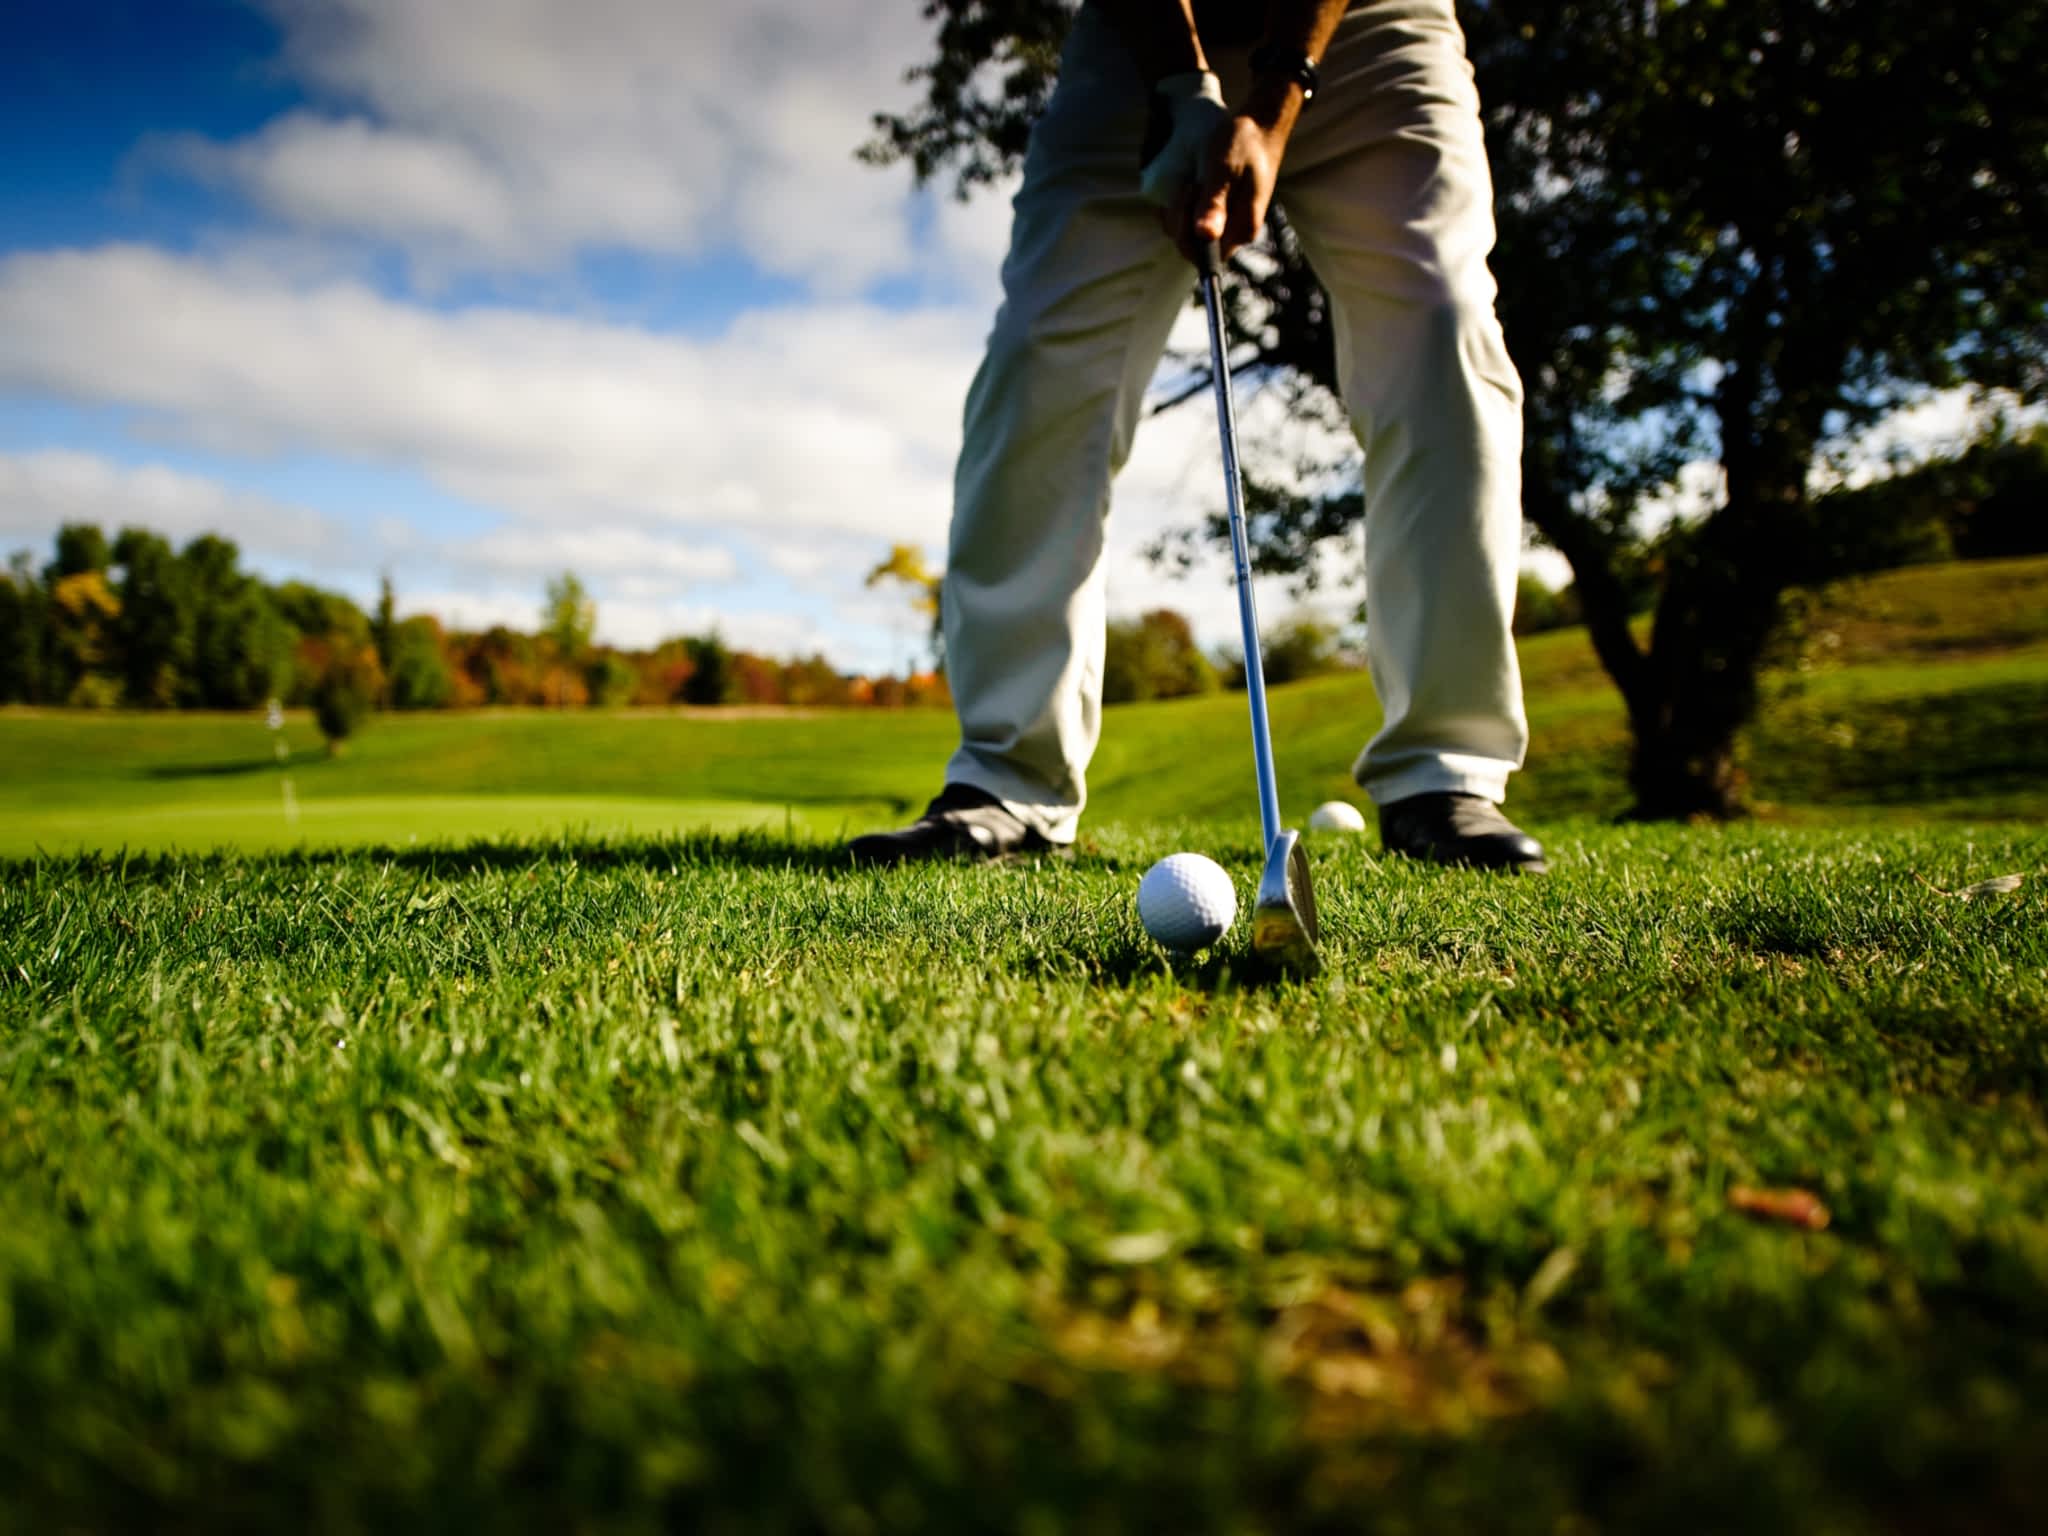 photo Club de Golf Dunnderosa et Mini-Golf Dunn-D's